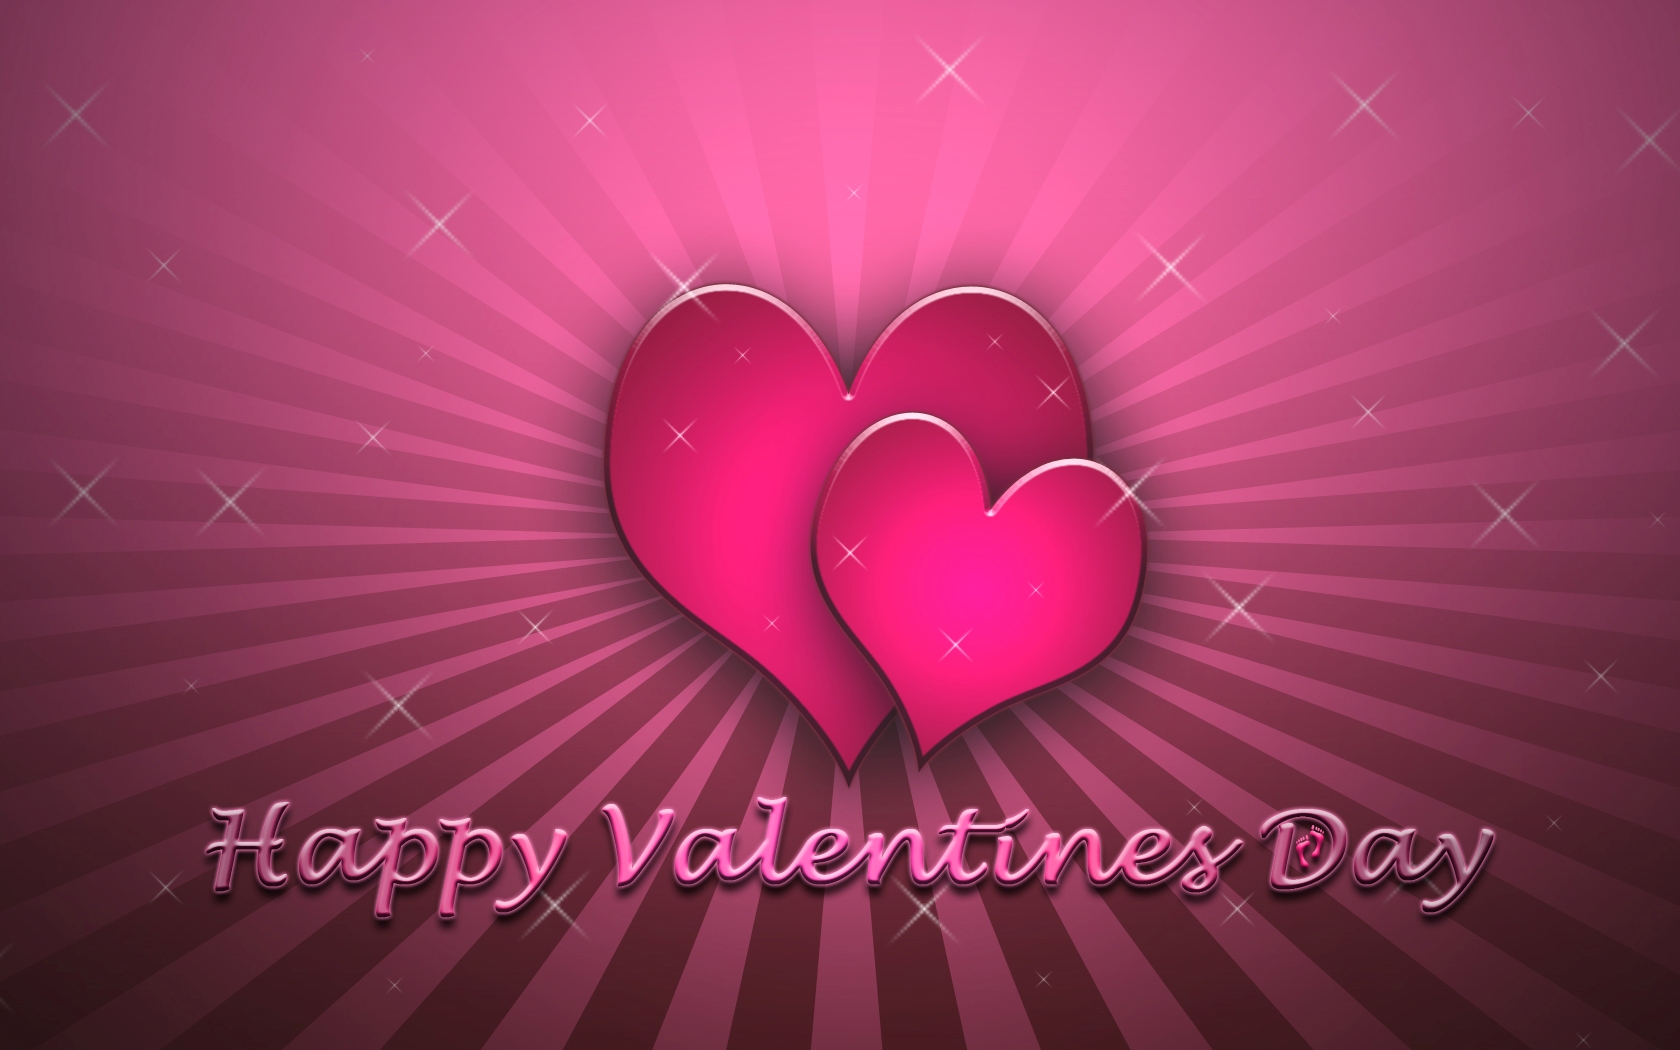 バレンタイン壁紙,心臓,ピンク,愛,赤,バレンタイン・デー